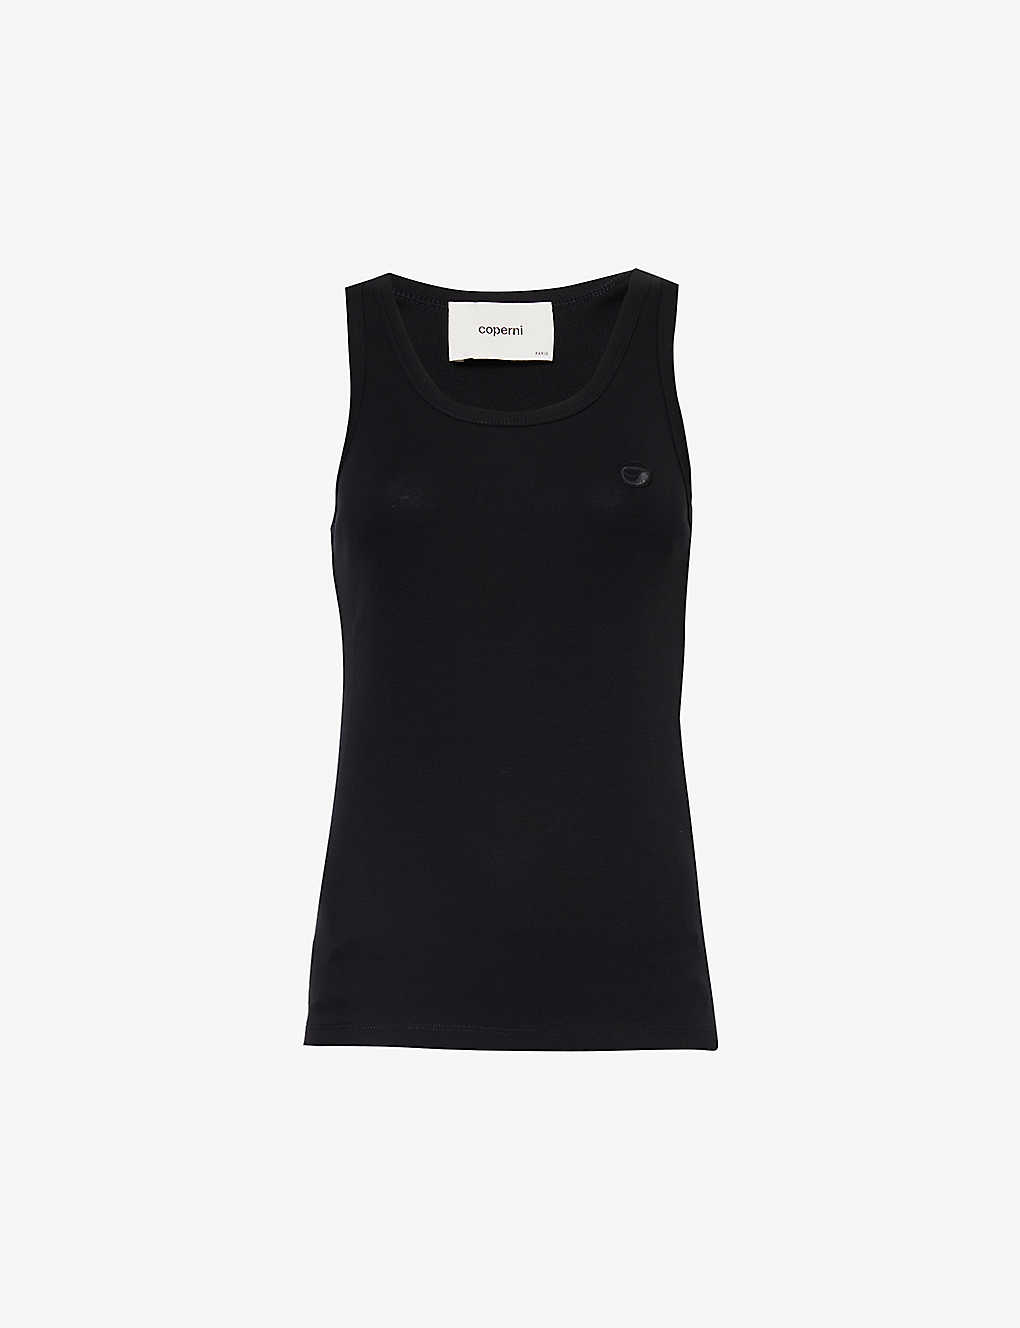 Shop Coperni Womens Black Logo-embellished Scoop-neck Cotton-jersey Top